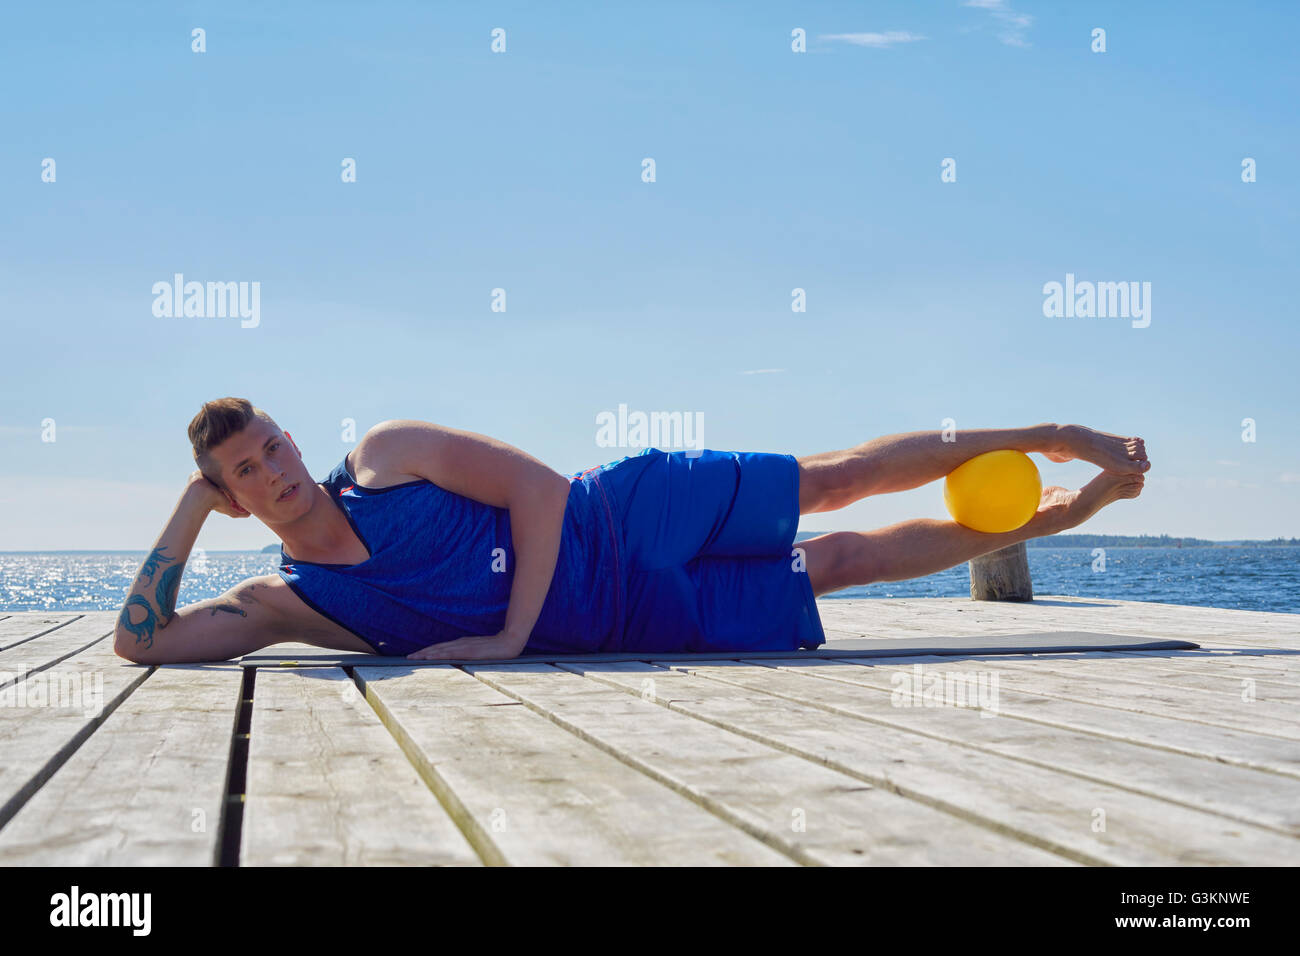 Mann liegen seitlich am Pier, ruht auf Ellenbogen Ball zwischen die Beine Blick in die Kamera Stockfoto